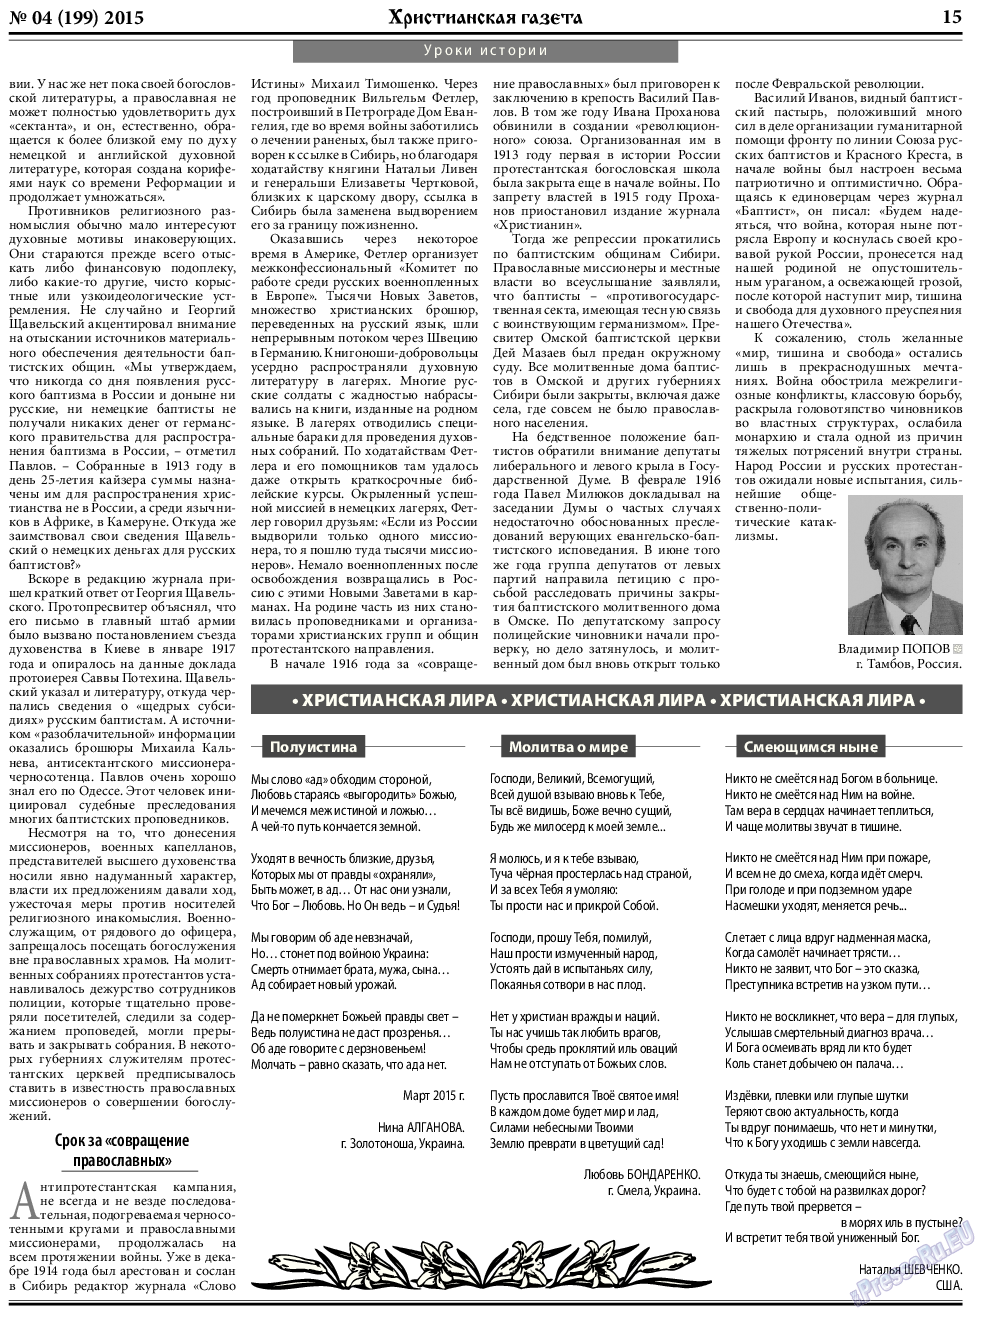 Христианская газета, газета. 2015 №4 стр.23